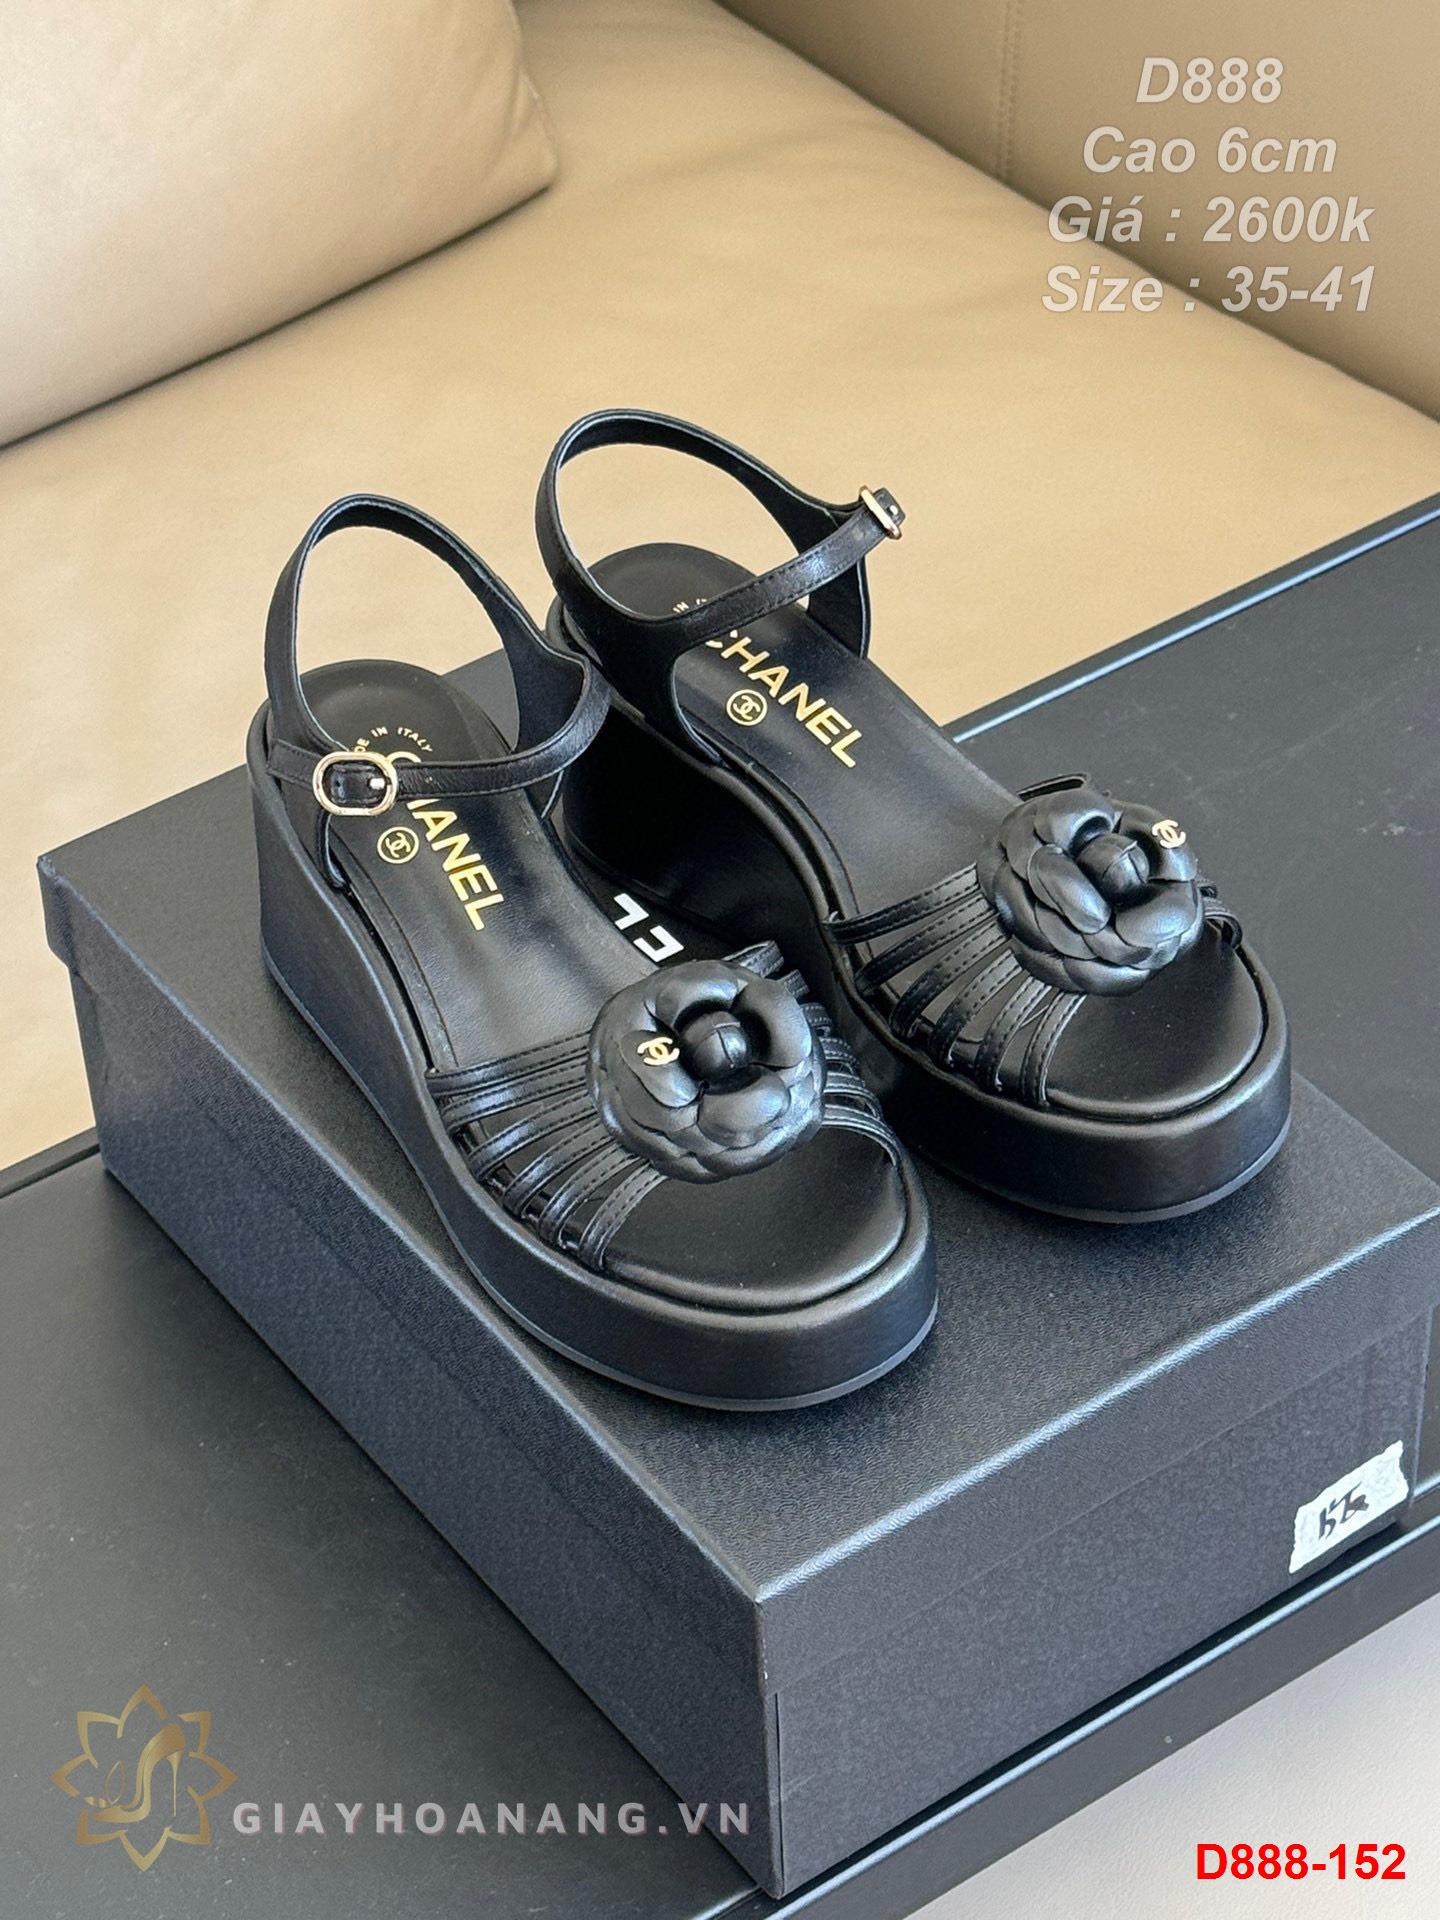 D888-152 Chanel sandal cao 6cm siêu cấp